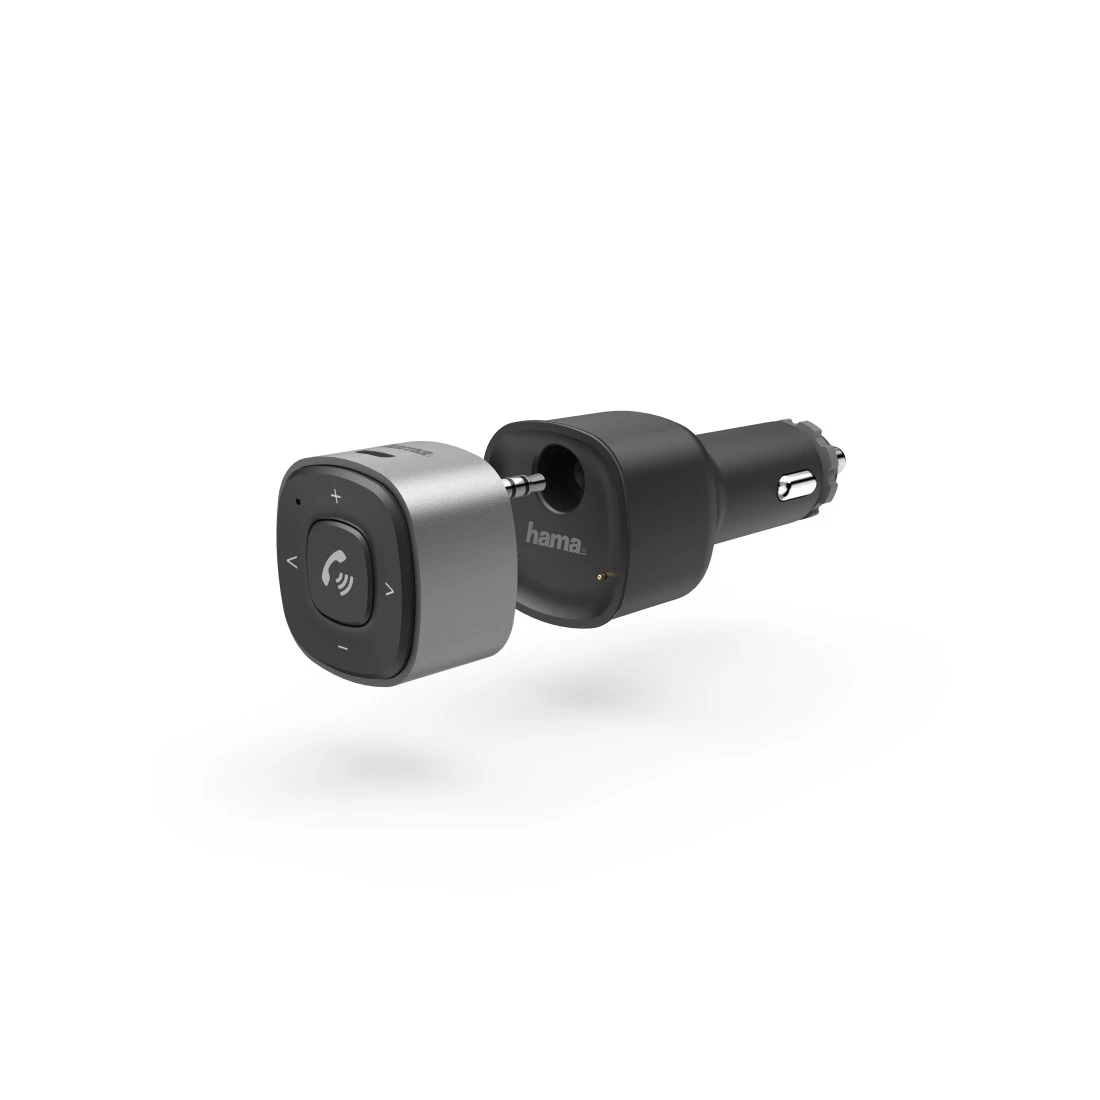 Récepteur Bluetooth® pour voiture, avec fiche 3,5 mm et chargeur USB